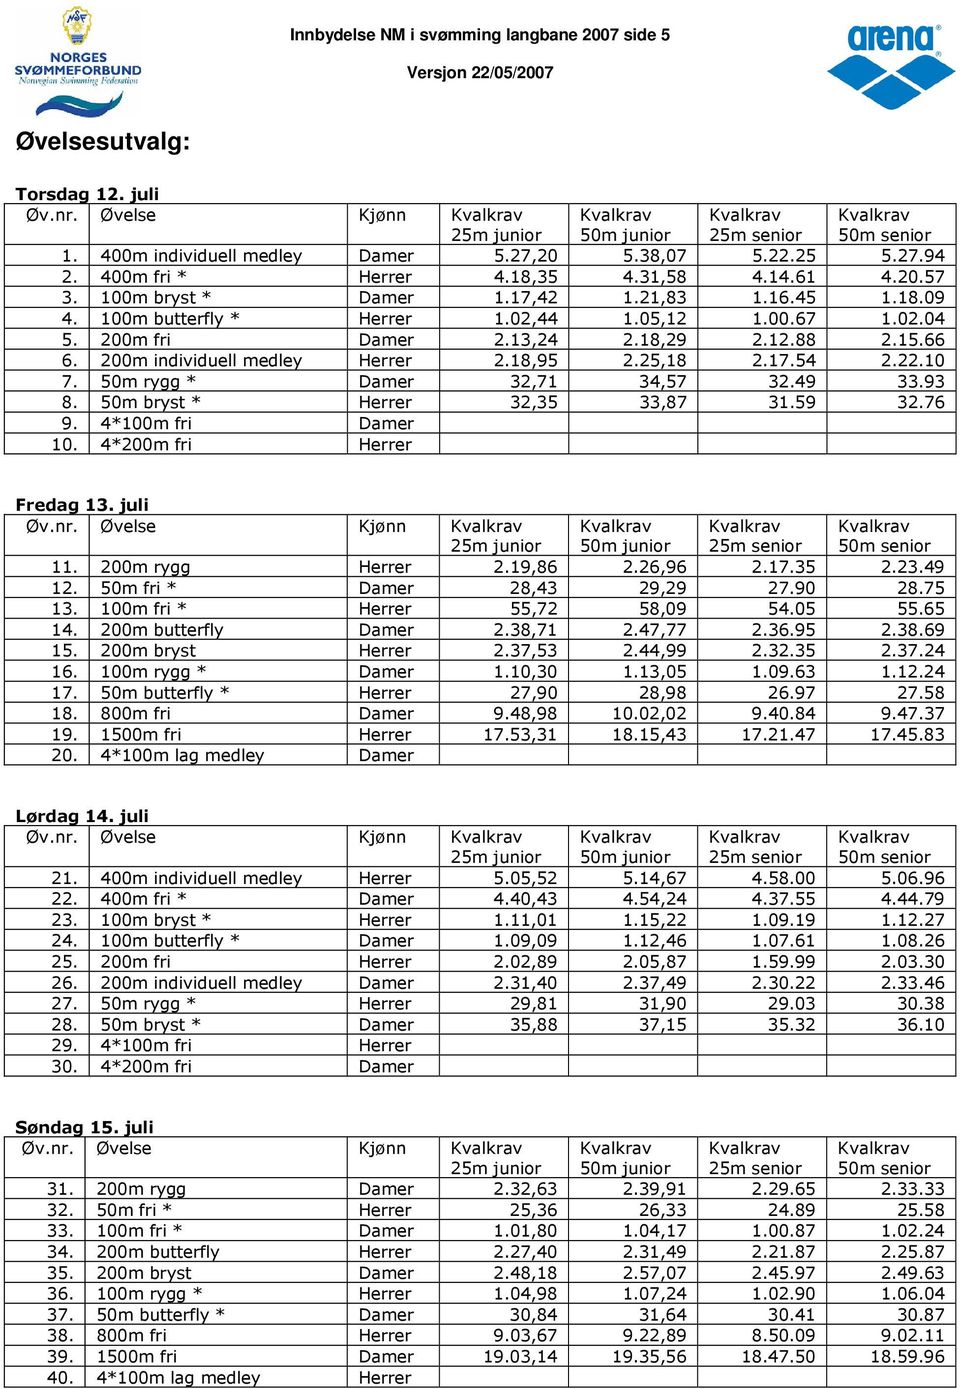 200m individuell medley Herrer 2.18,95 2.25,18 2.17.54 2.22.10 7. 50m rygg * Damer 32,71 34,57 32.49 33.93 8. 50m bryst * Herrer 32,35 33,87 31.59 32.76 9. 4*100m fri Damer 10.